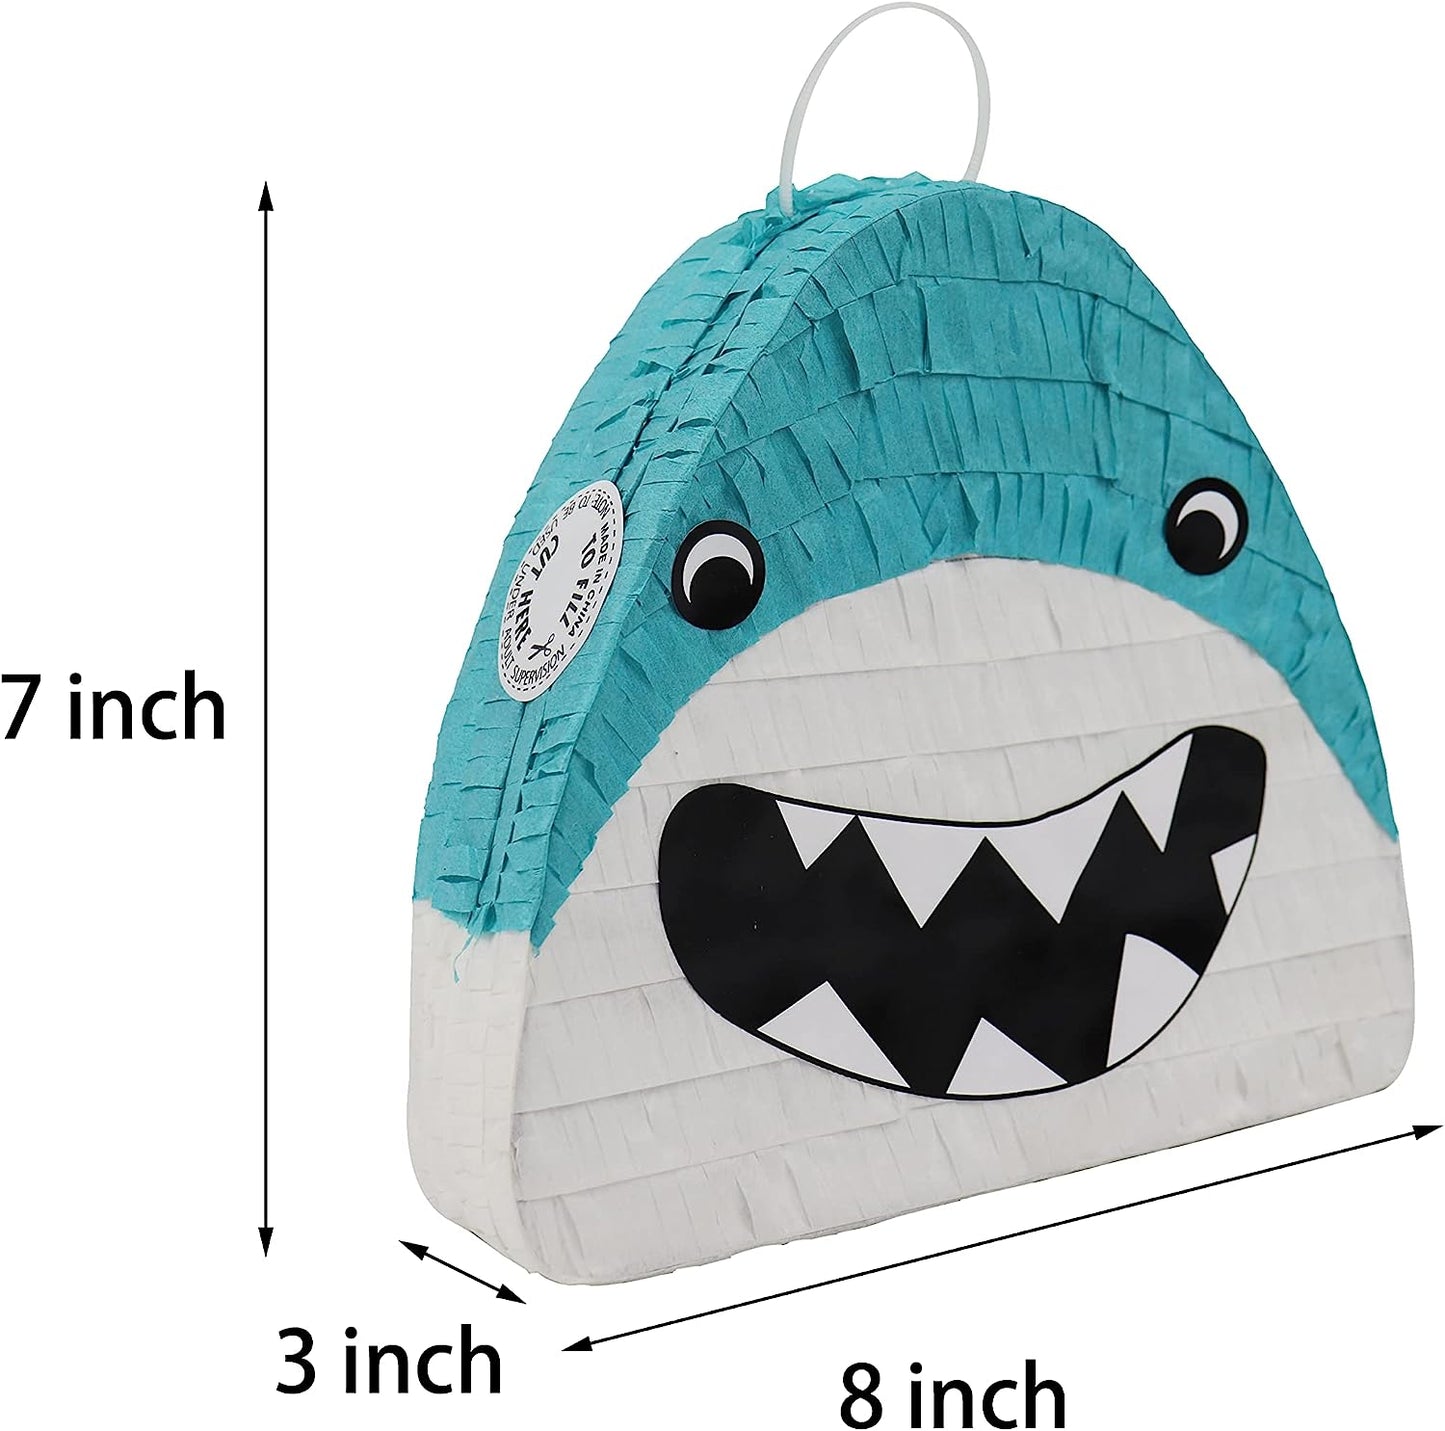 GIFTEXPRESS 8 piñatas pequeñas de tiburón bebé (7.8 x 2.4 x 7 pulgadas) 